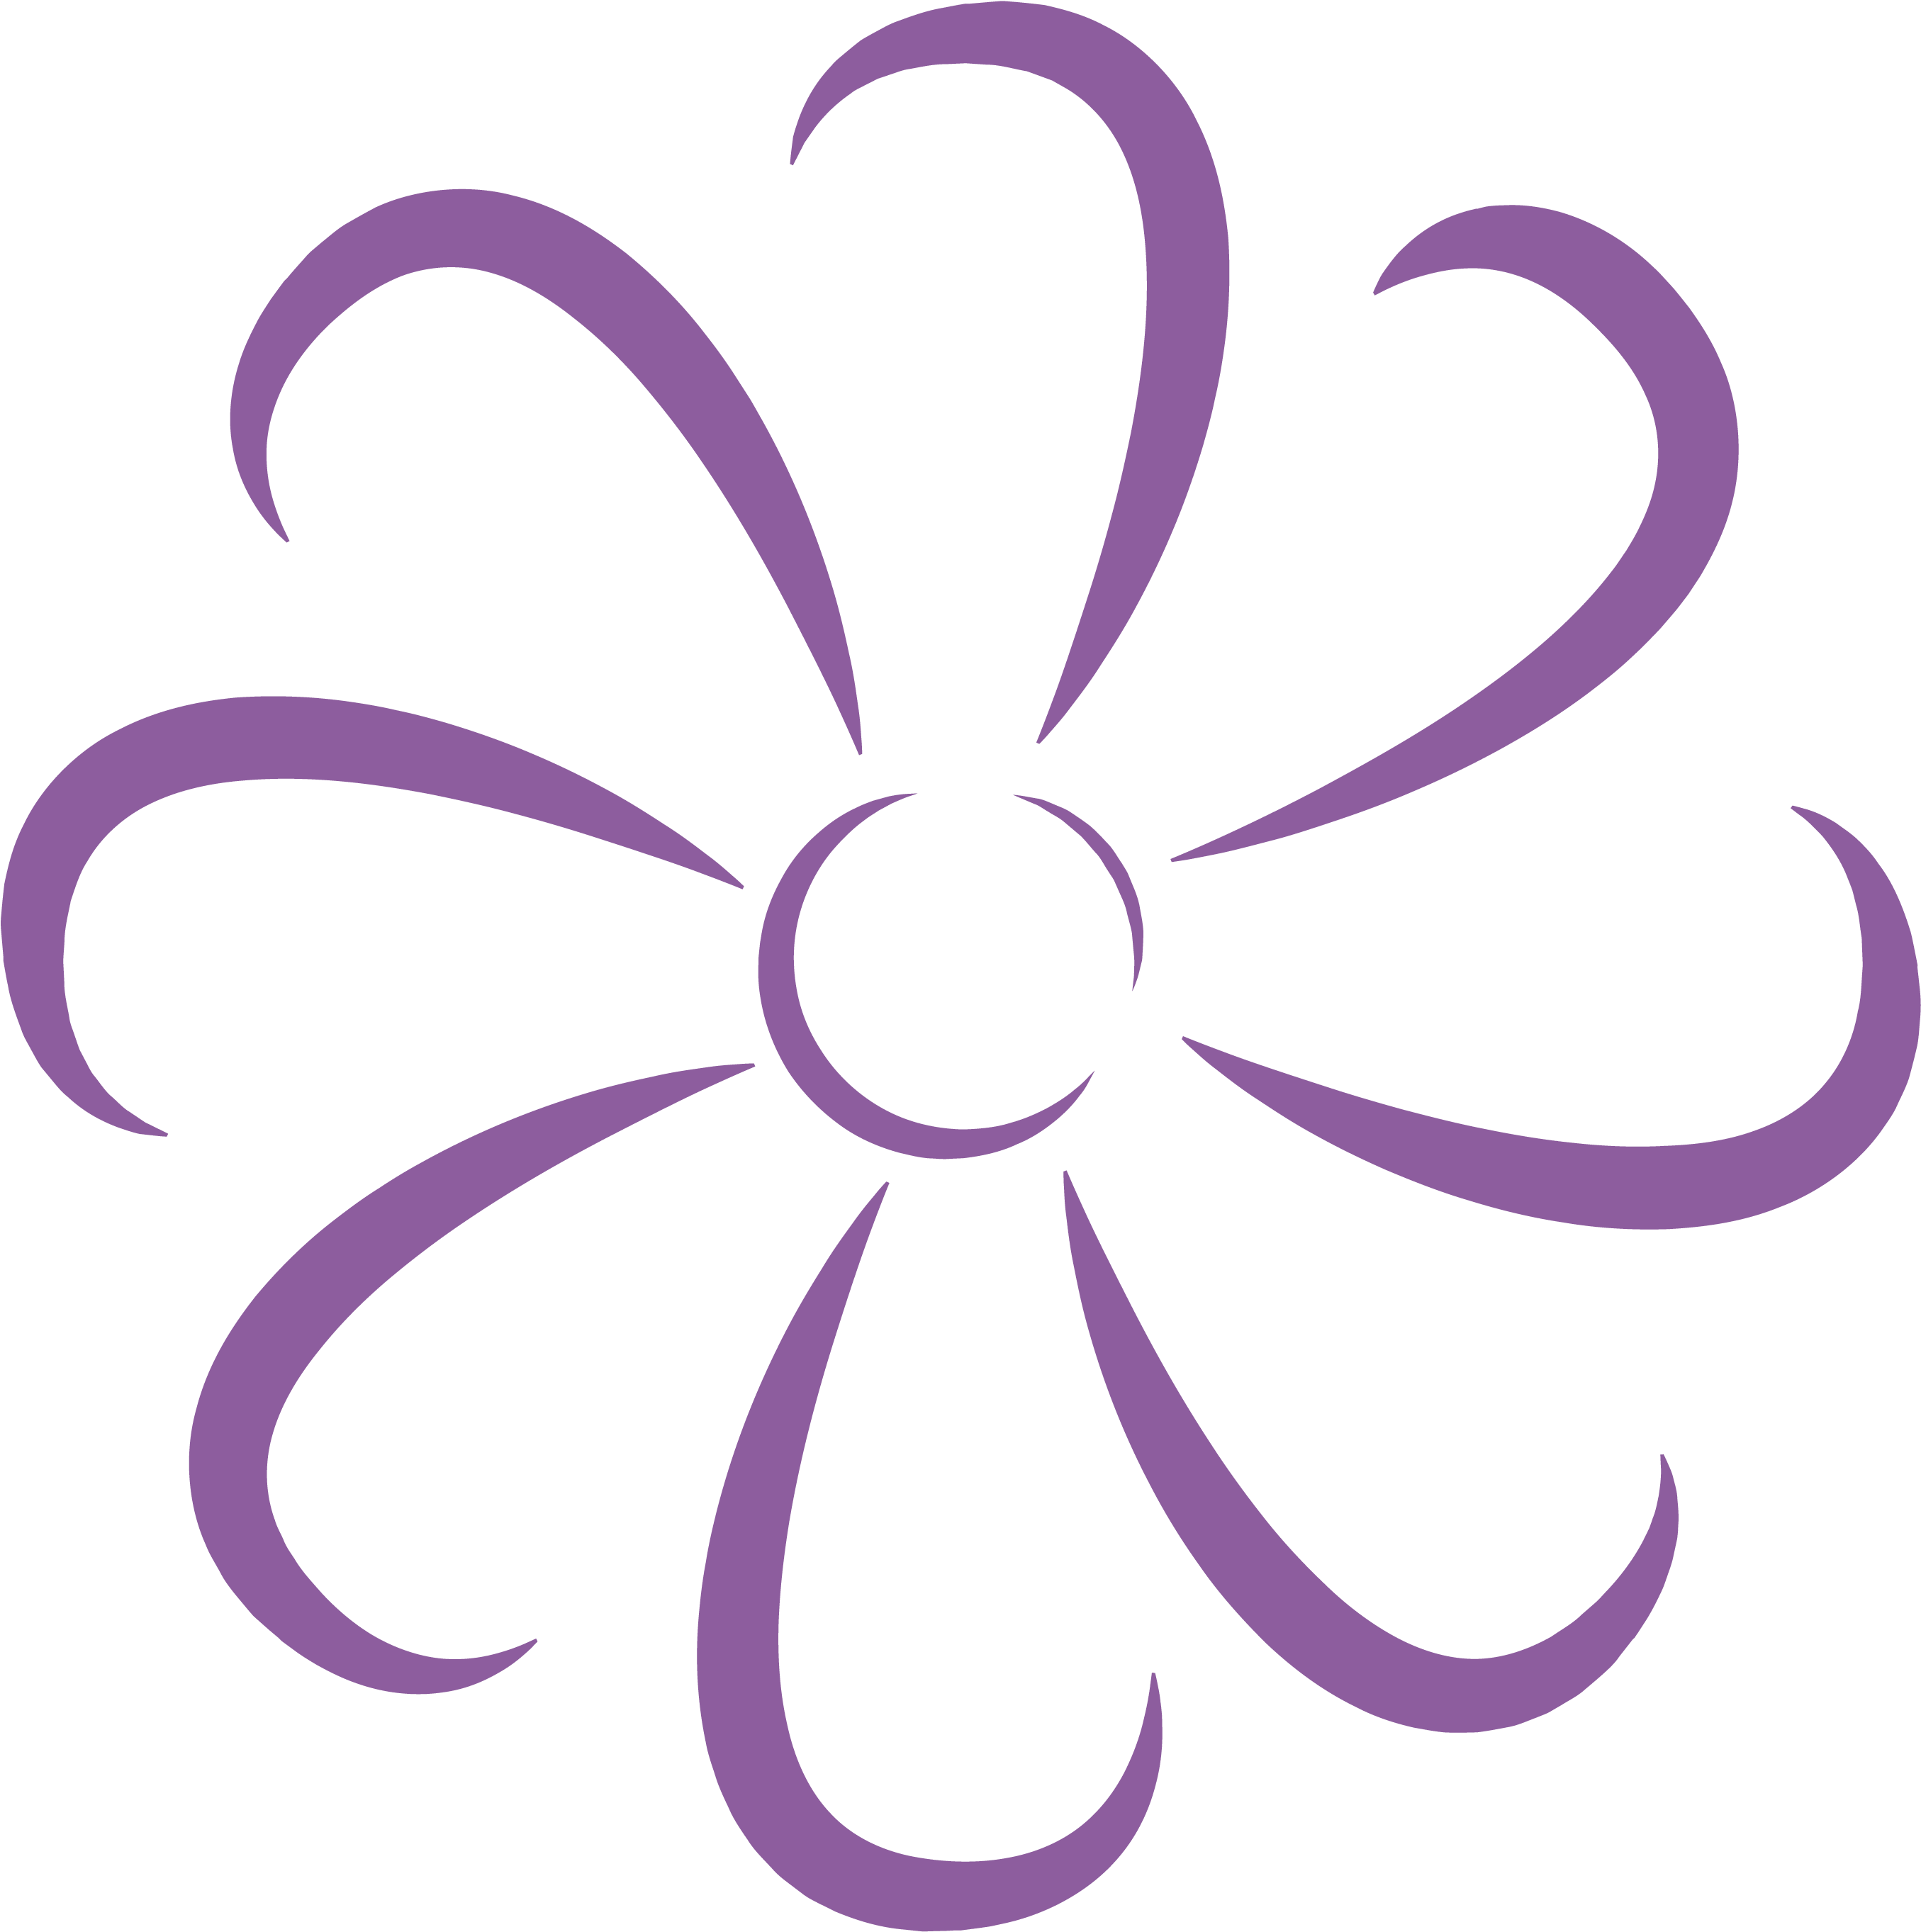 Flower Icon Cmyk-01 - Graphic Design (2917x2917)